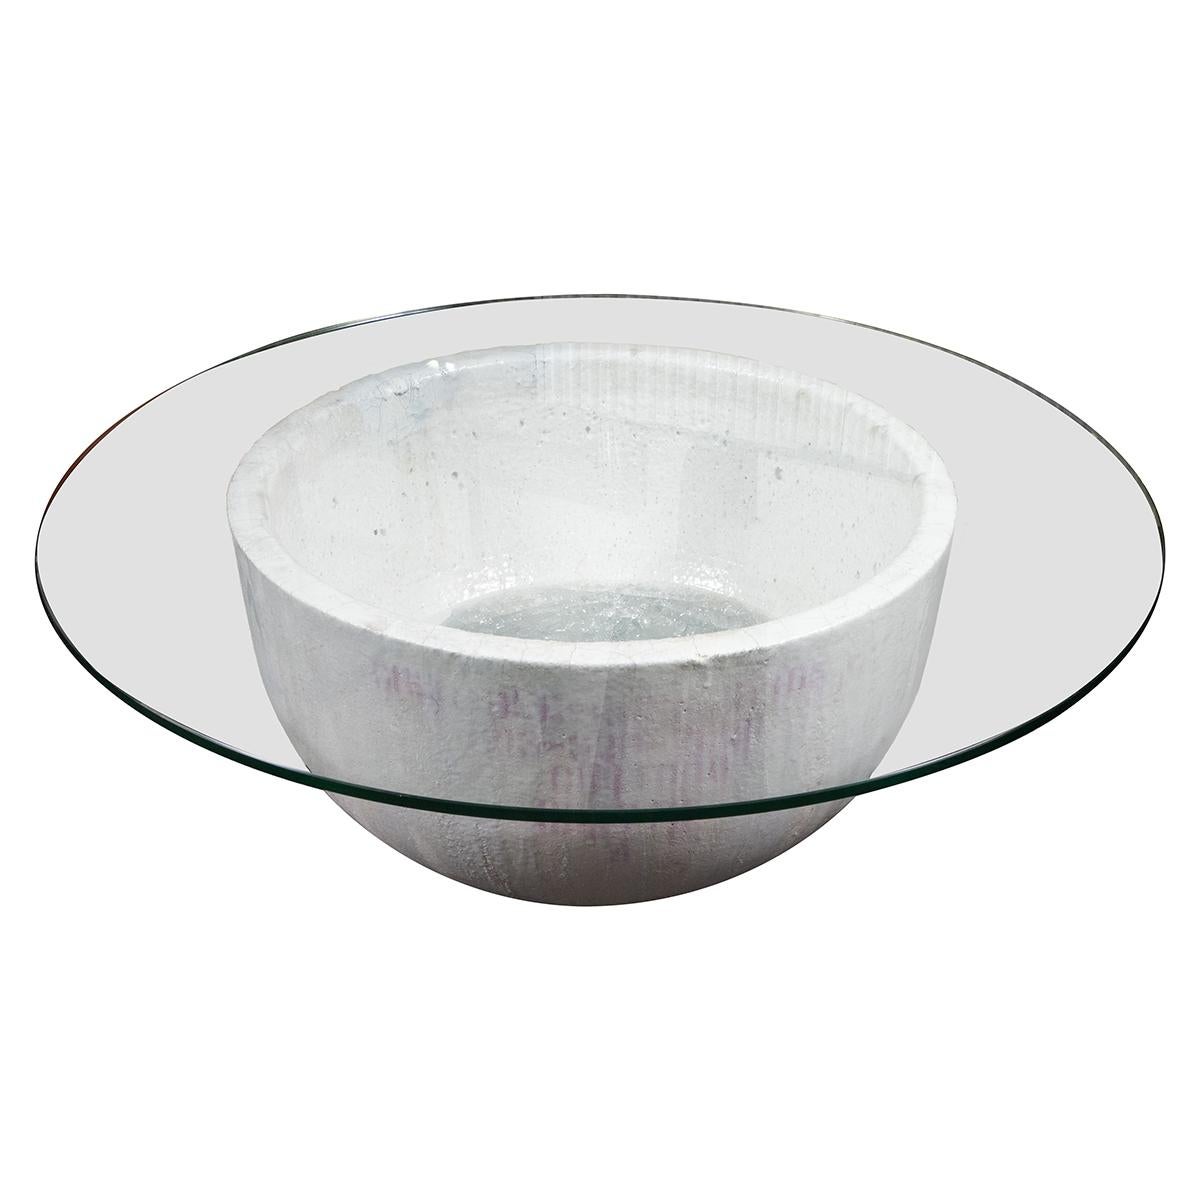 Table basse rare et inhabituelle fabriquée à partir d'un pot de fusion de verre massif. Des éléments en verre fondu et fusionné sont exposés dans le pot.